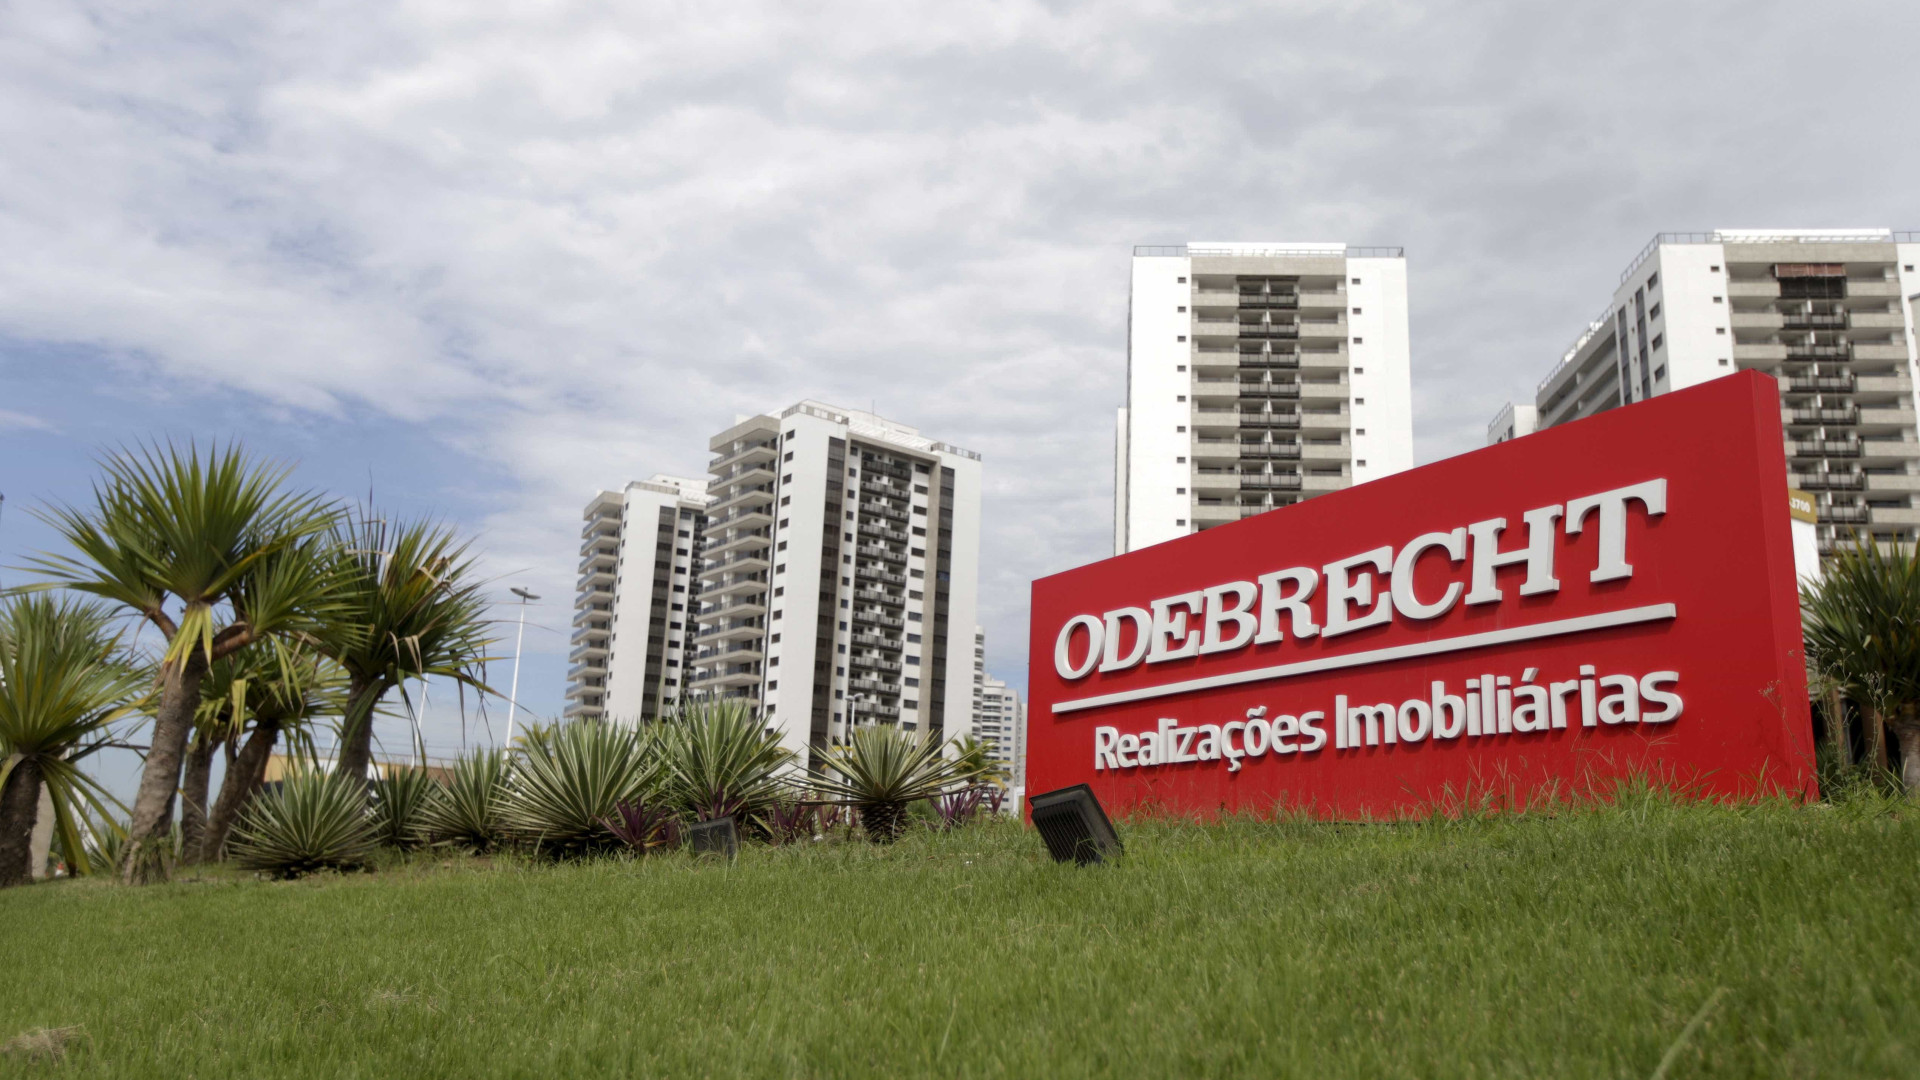 Odebrecht: delação com suspensão de
dinheiro para acionistas